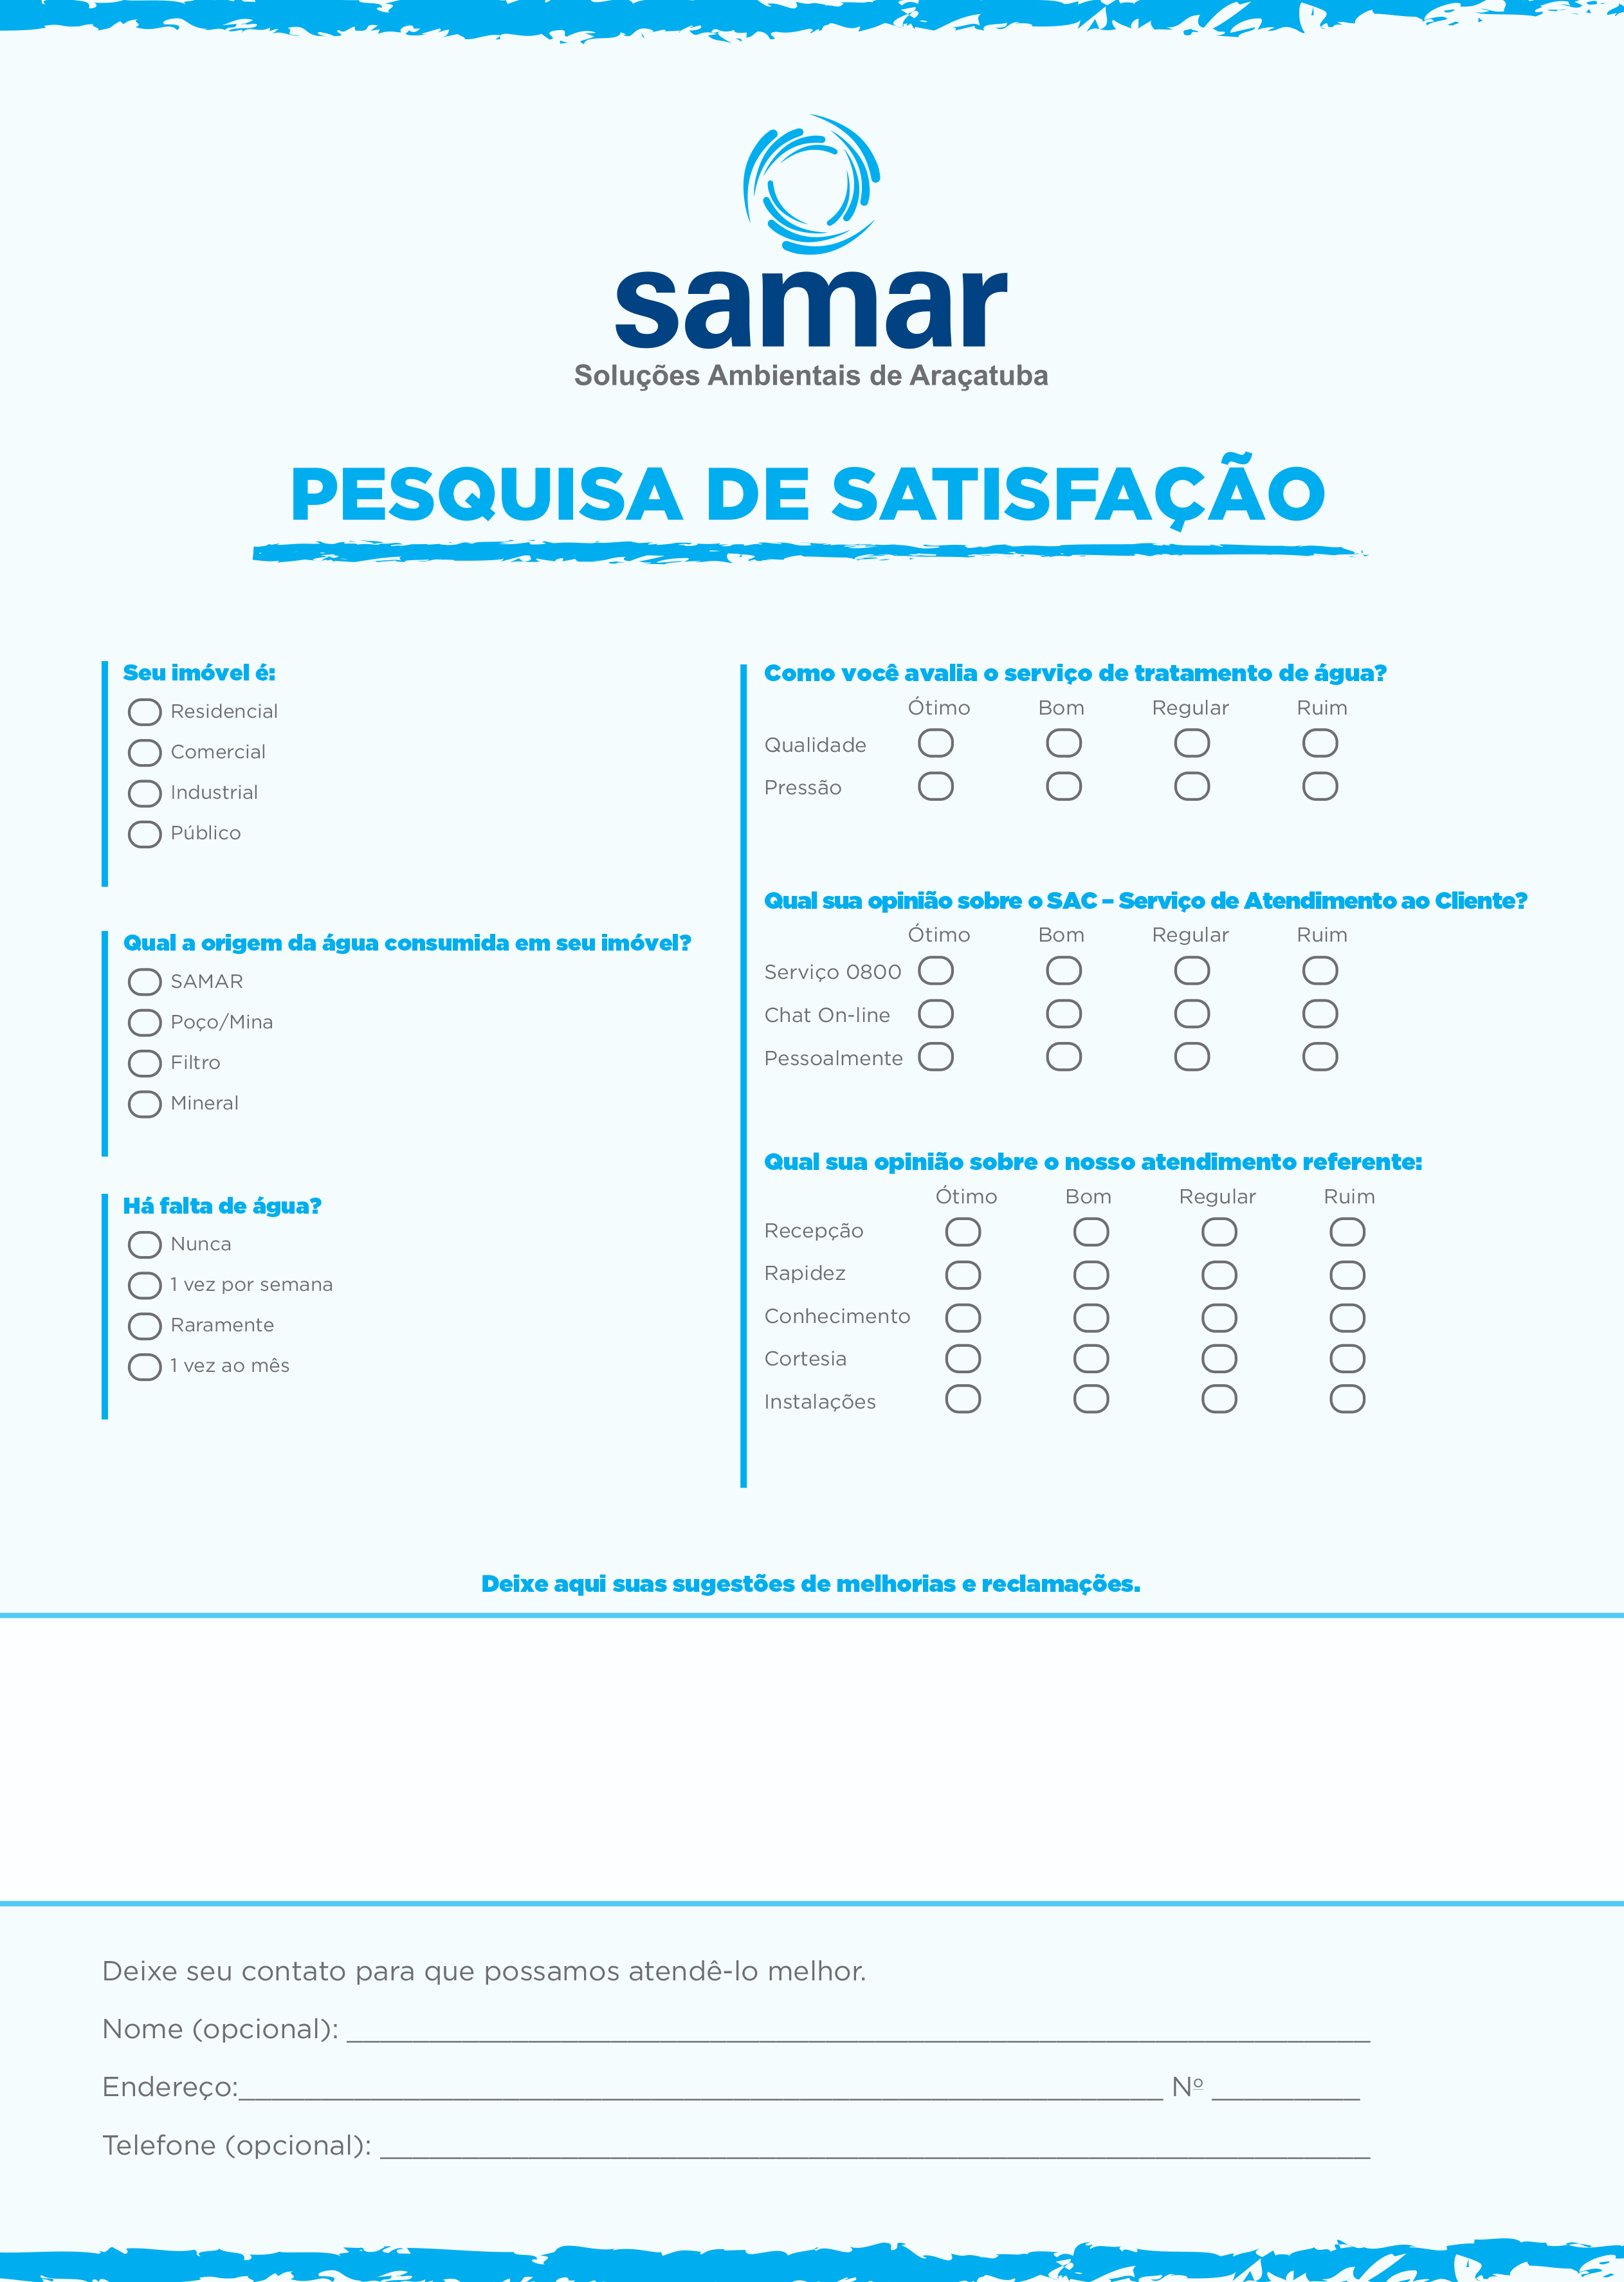 Featured image for “Pesquisa de Satisfação”